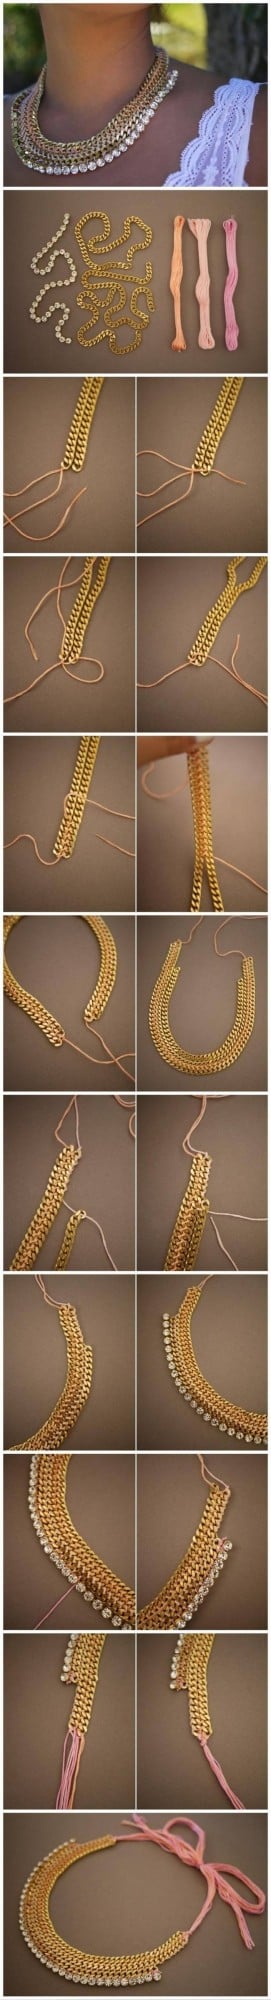 22 Gorgeous DIY Necklaces 25